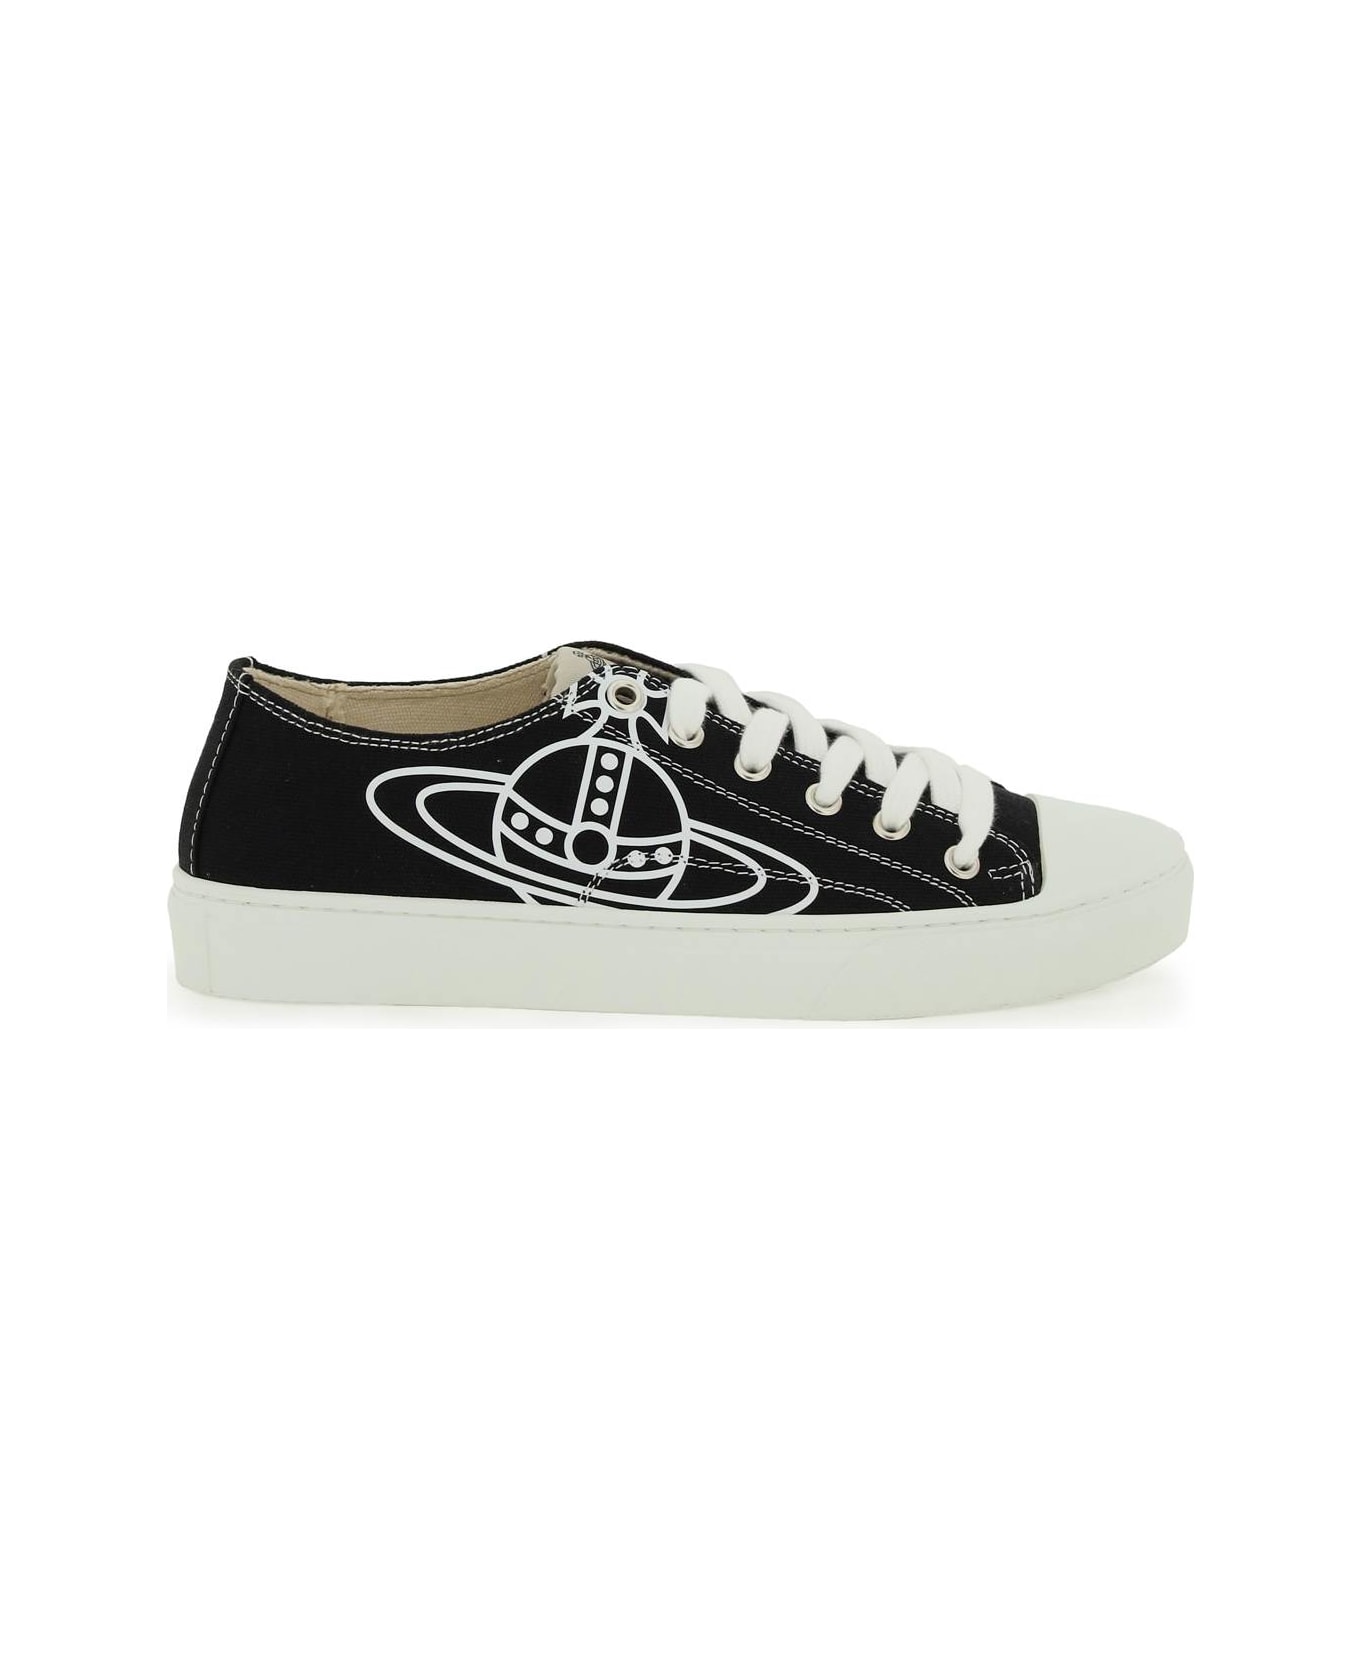 Vivienne Westwood Plimsoll Low Top 2.0 Sneakers - BLACK (Black)